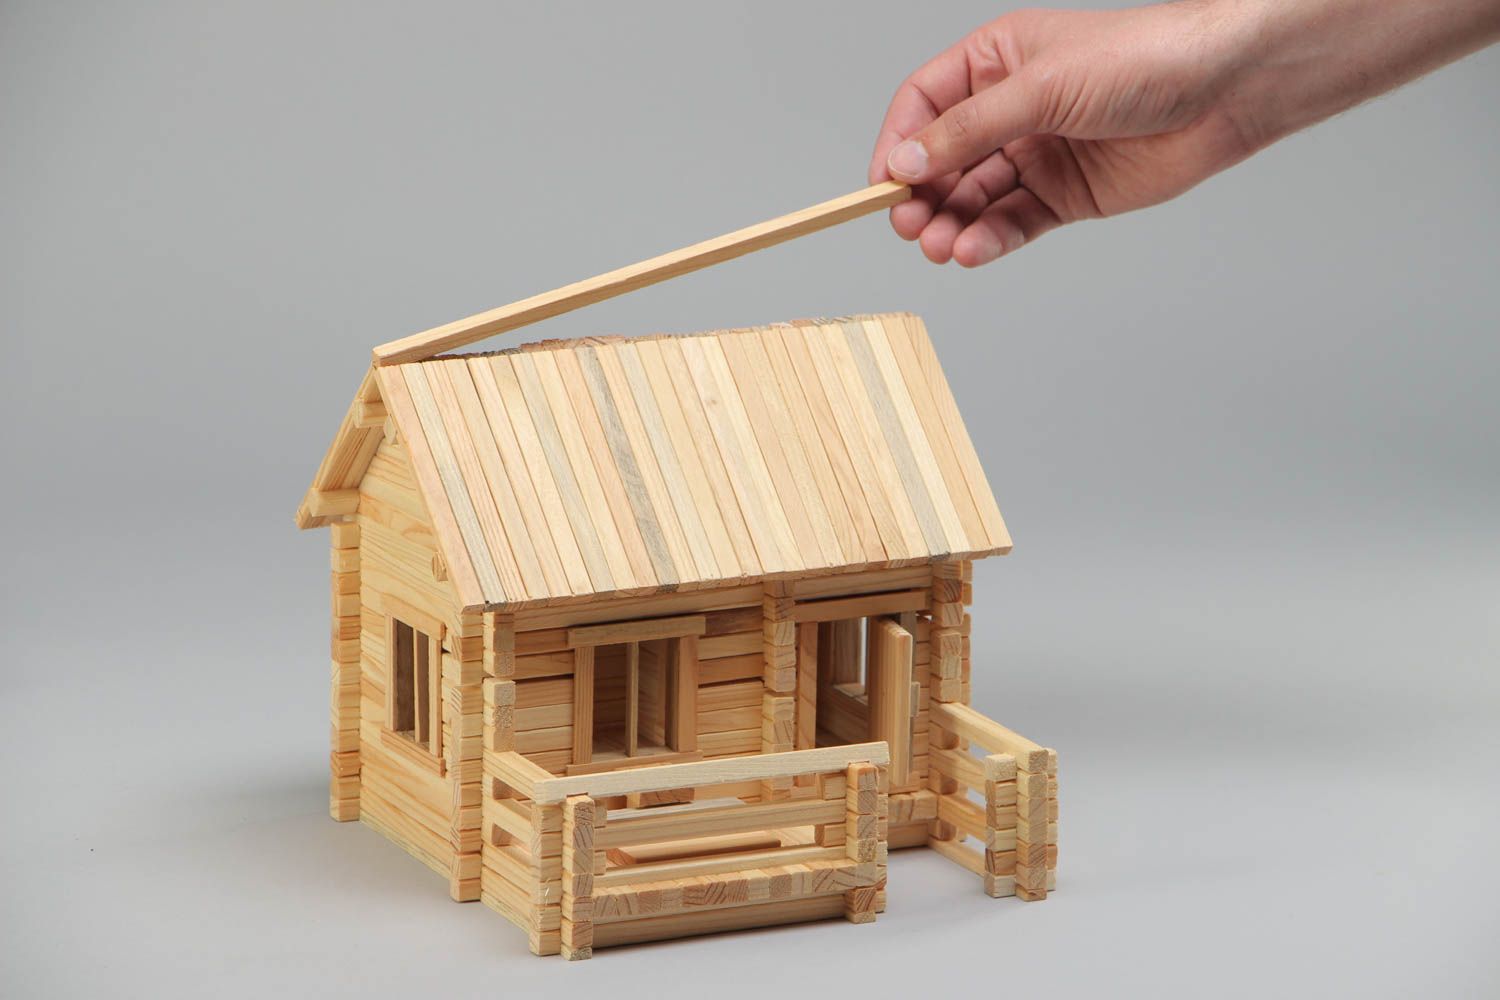 construction jouet en bois